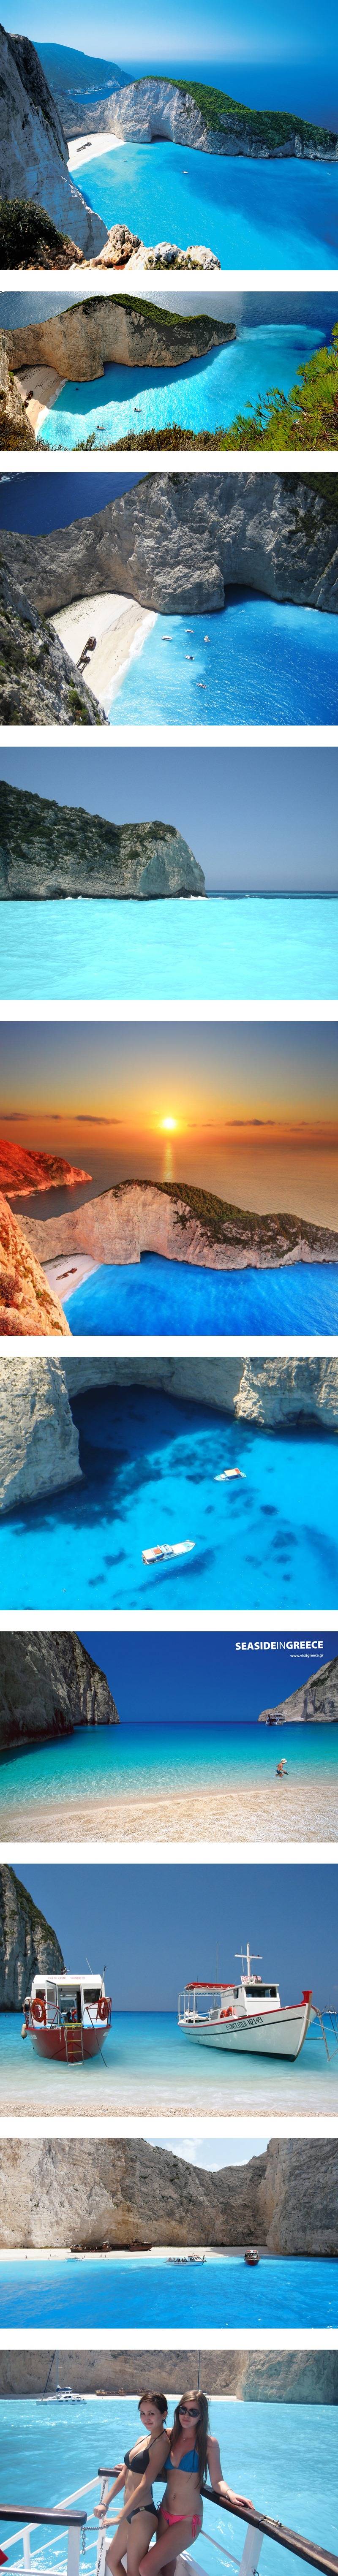 그리스의_평범한_해변.jpg